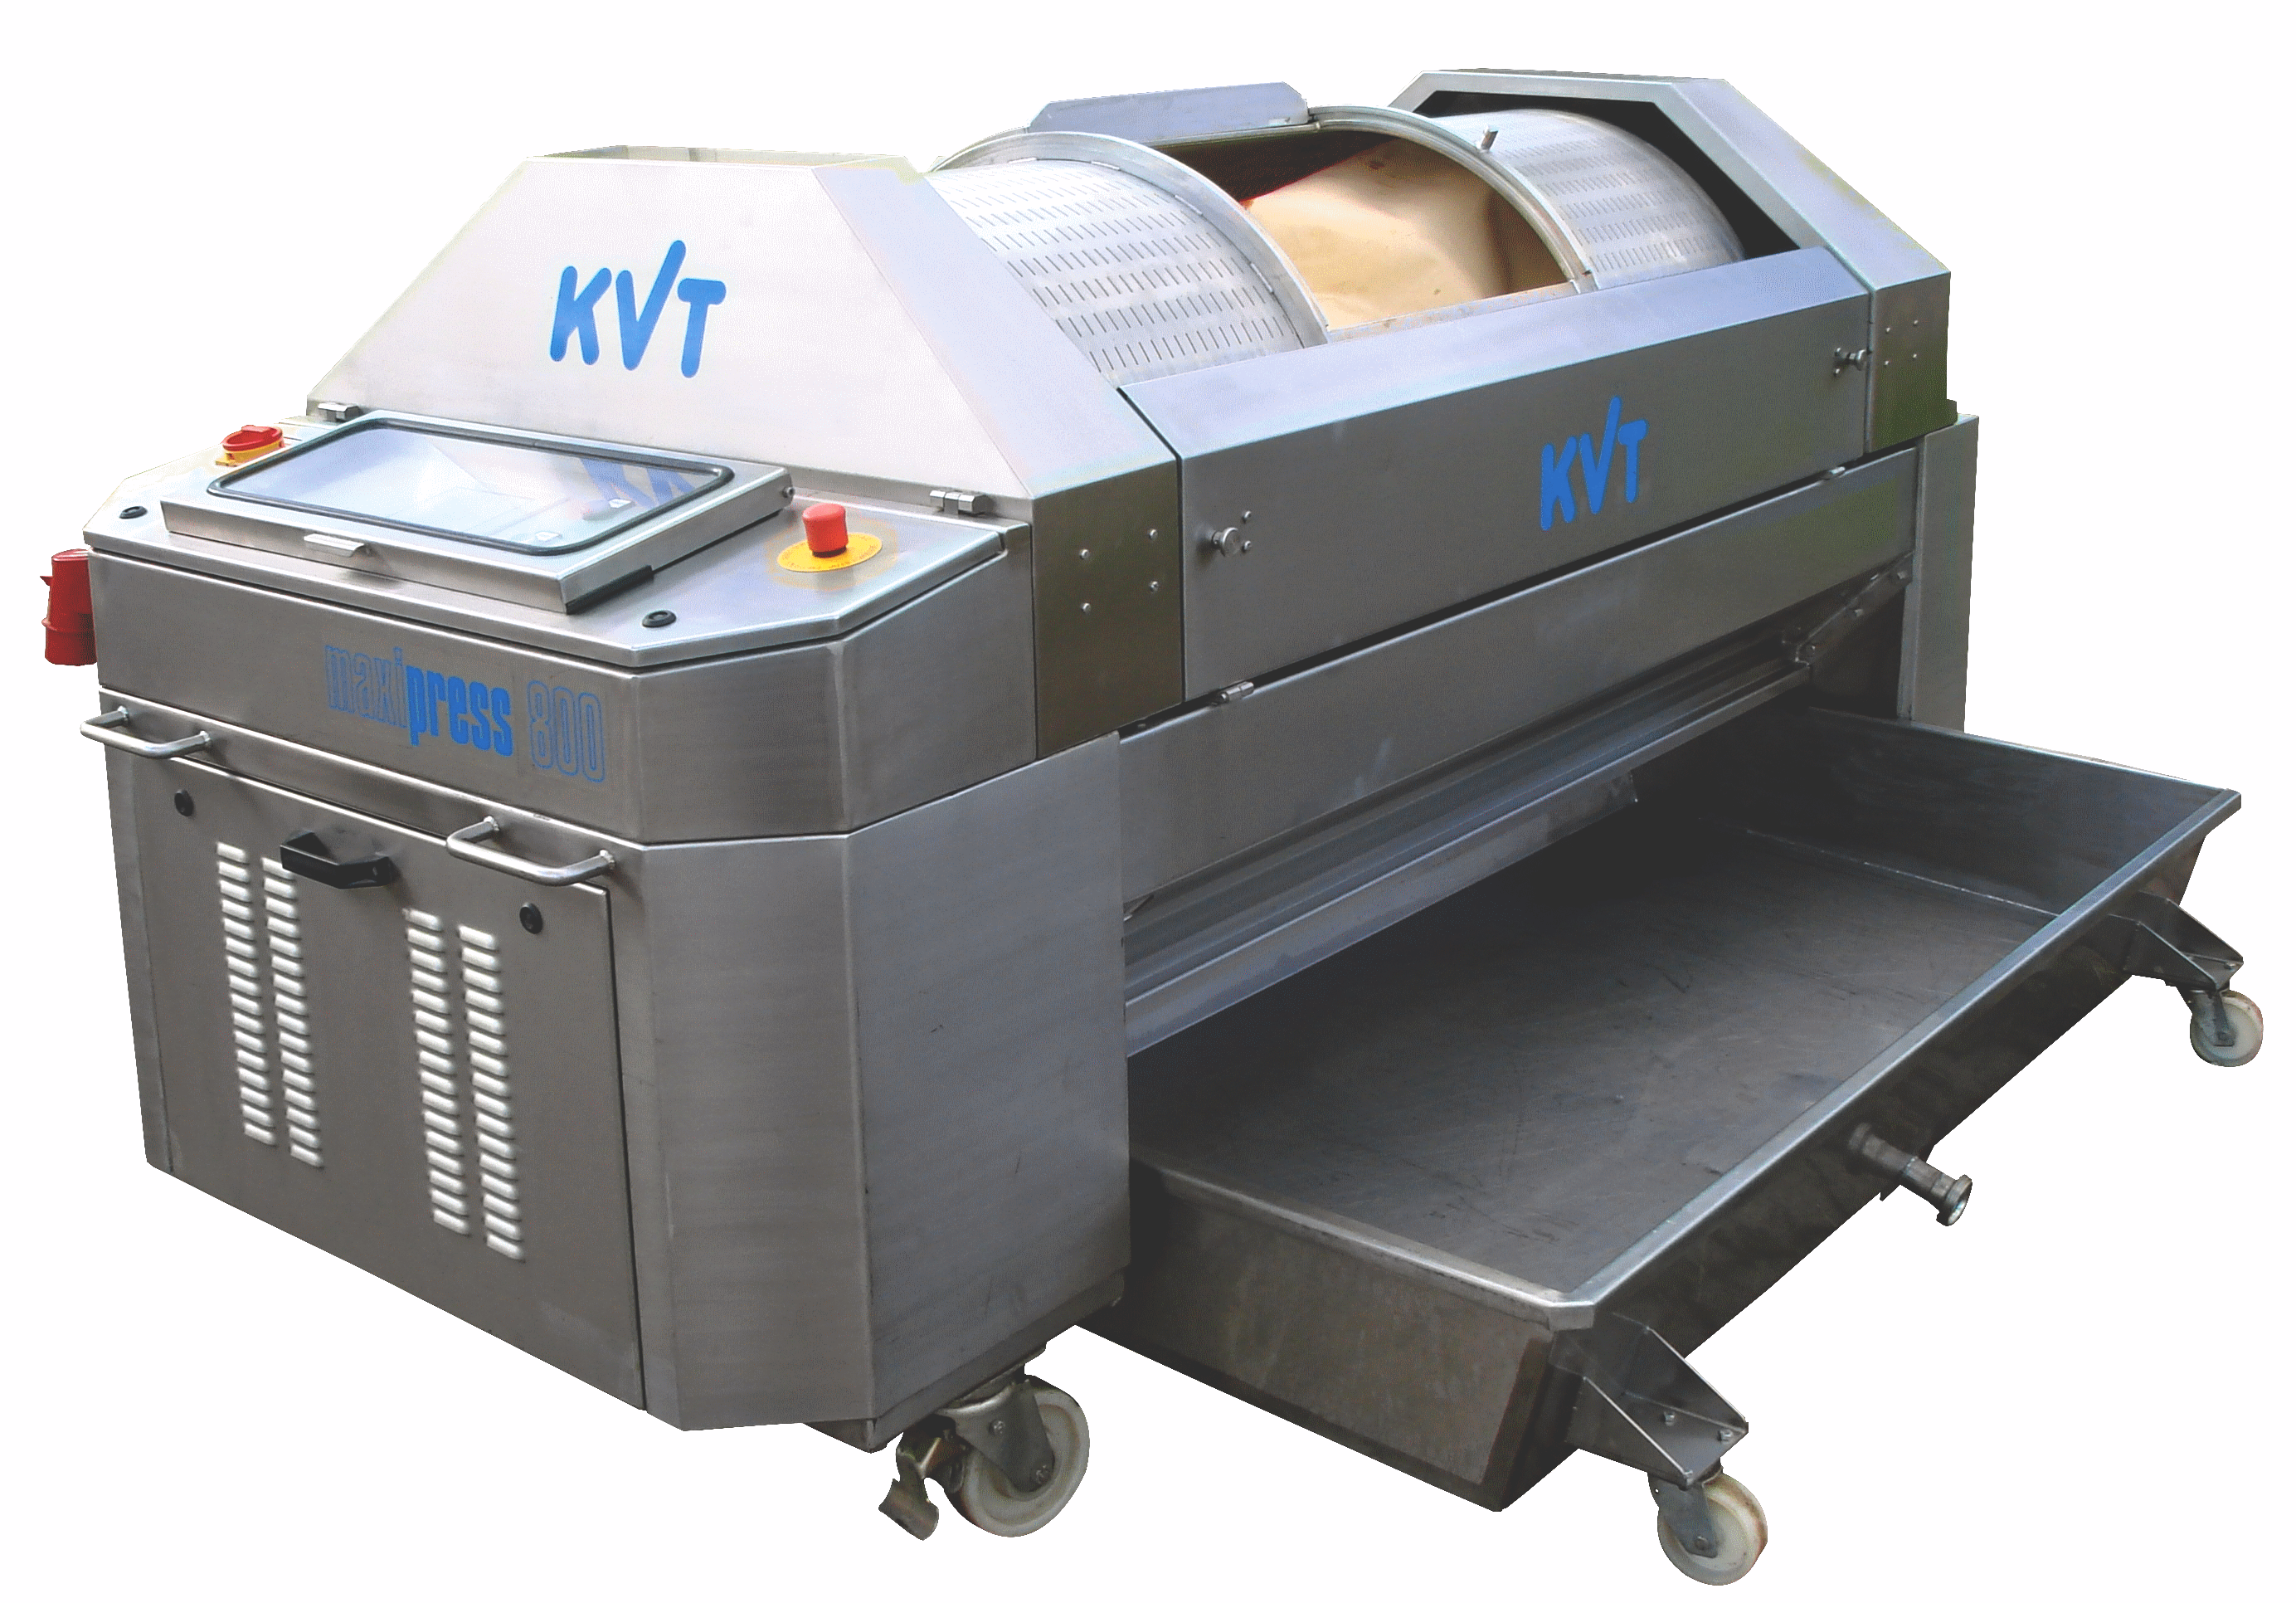 KVT-MAXI-PRESS-800-DSC08540-D